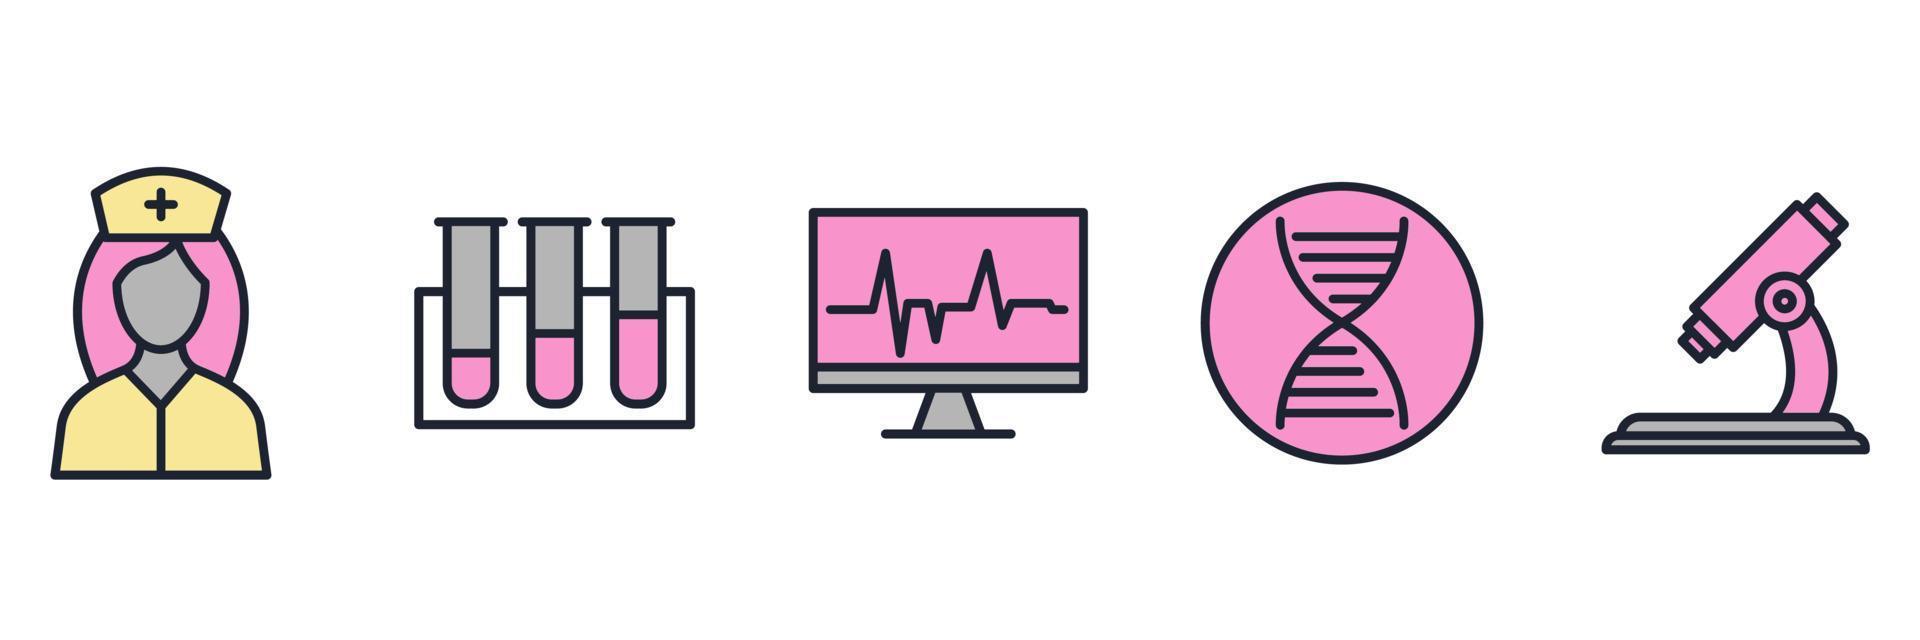 Medizin- und Gesundheitselemente setzen Symbolsymbolvorlage für Grafik- und Webdesign-Sammlung Logo-Vektorillustration vektor